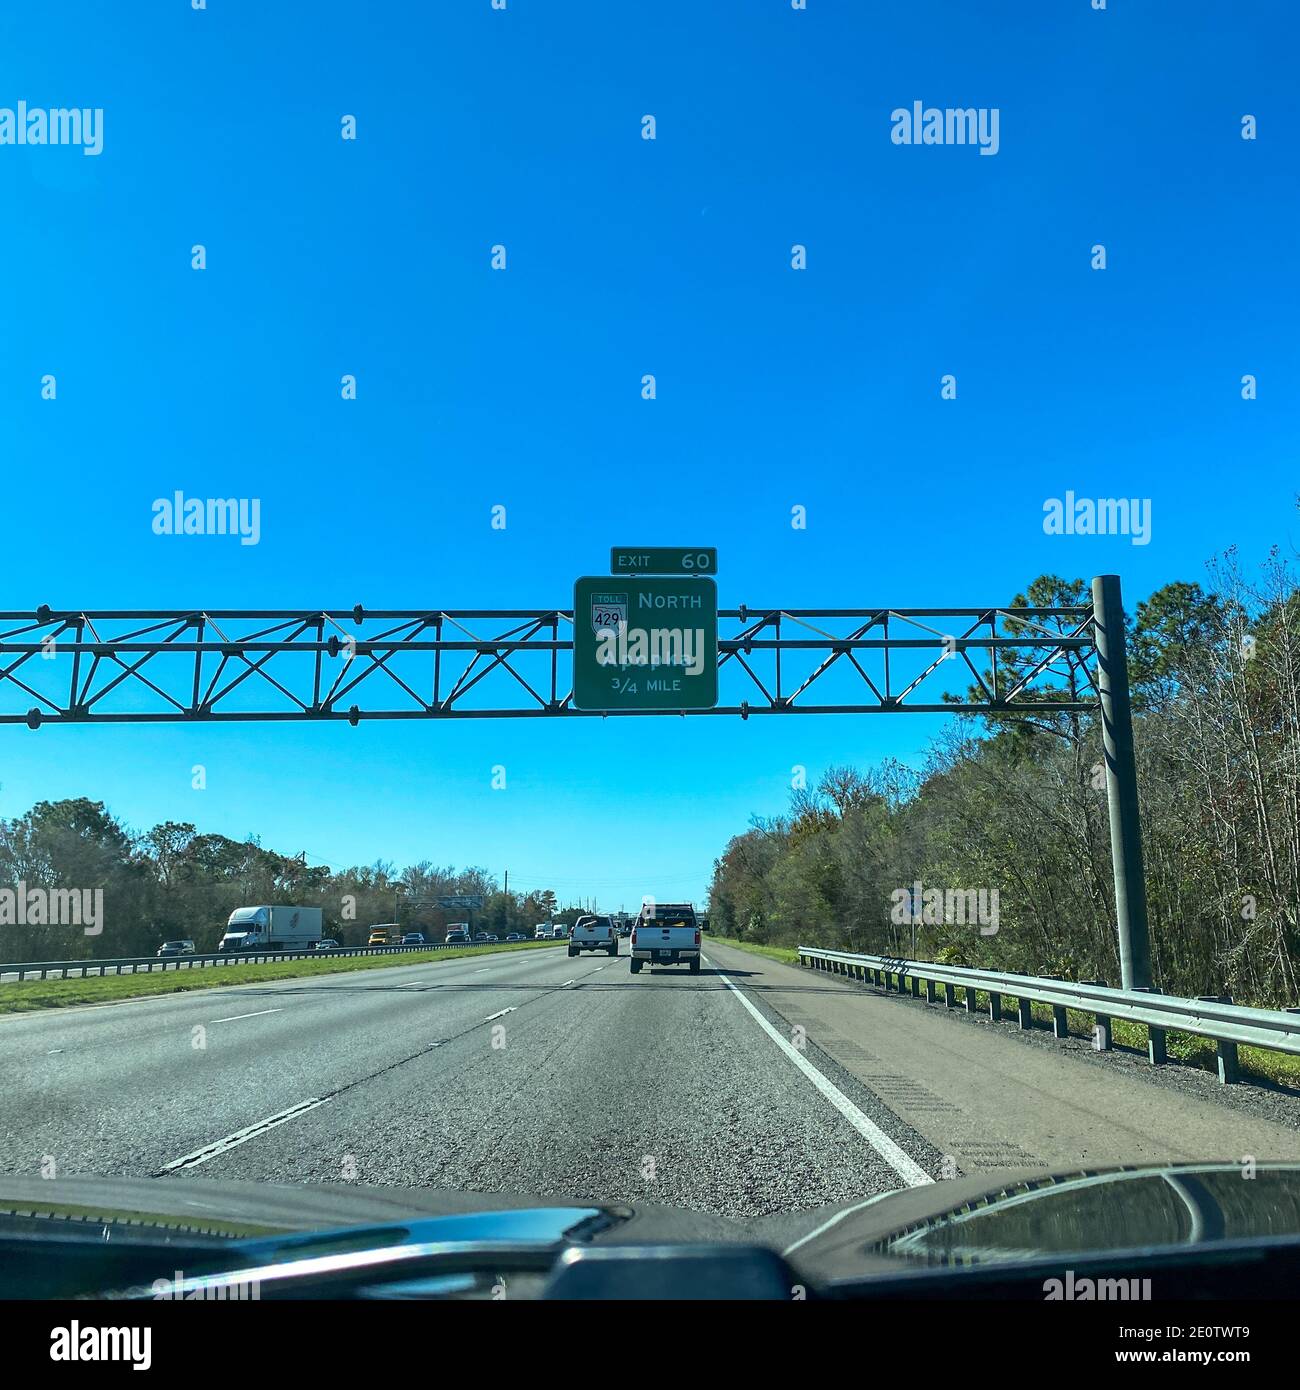 Orlando, FL USA - 20. Januar 2020: Autobahnschilder auf der Interstate 4, die zum Highway 429 in Richtung Apopka in Florida führen. Stockfoto